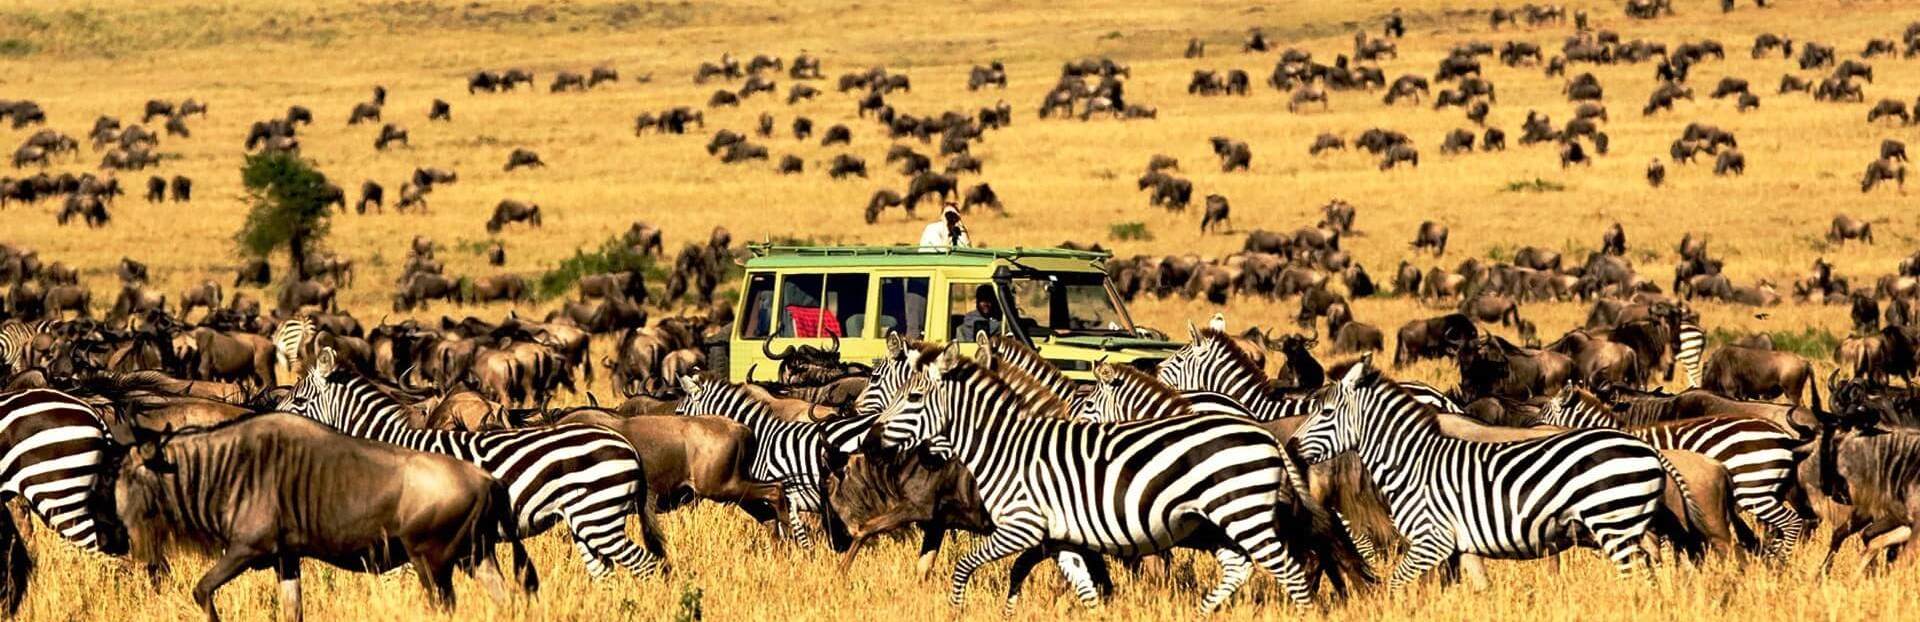 Serengeti-National-Park-1